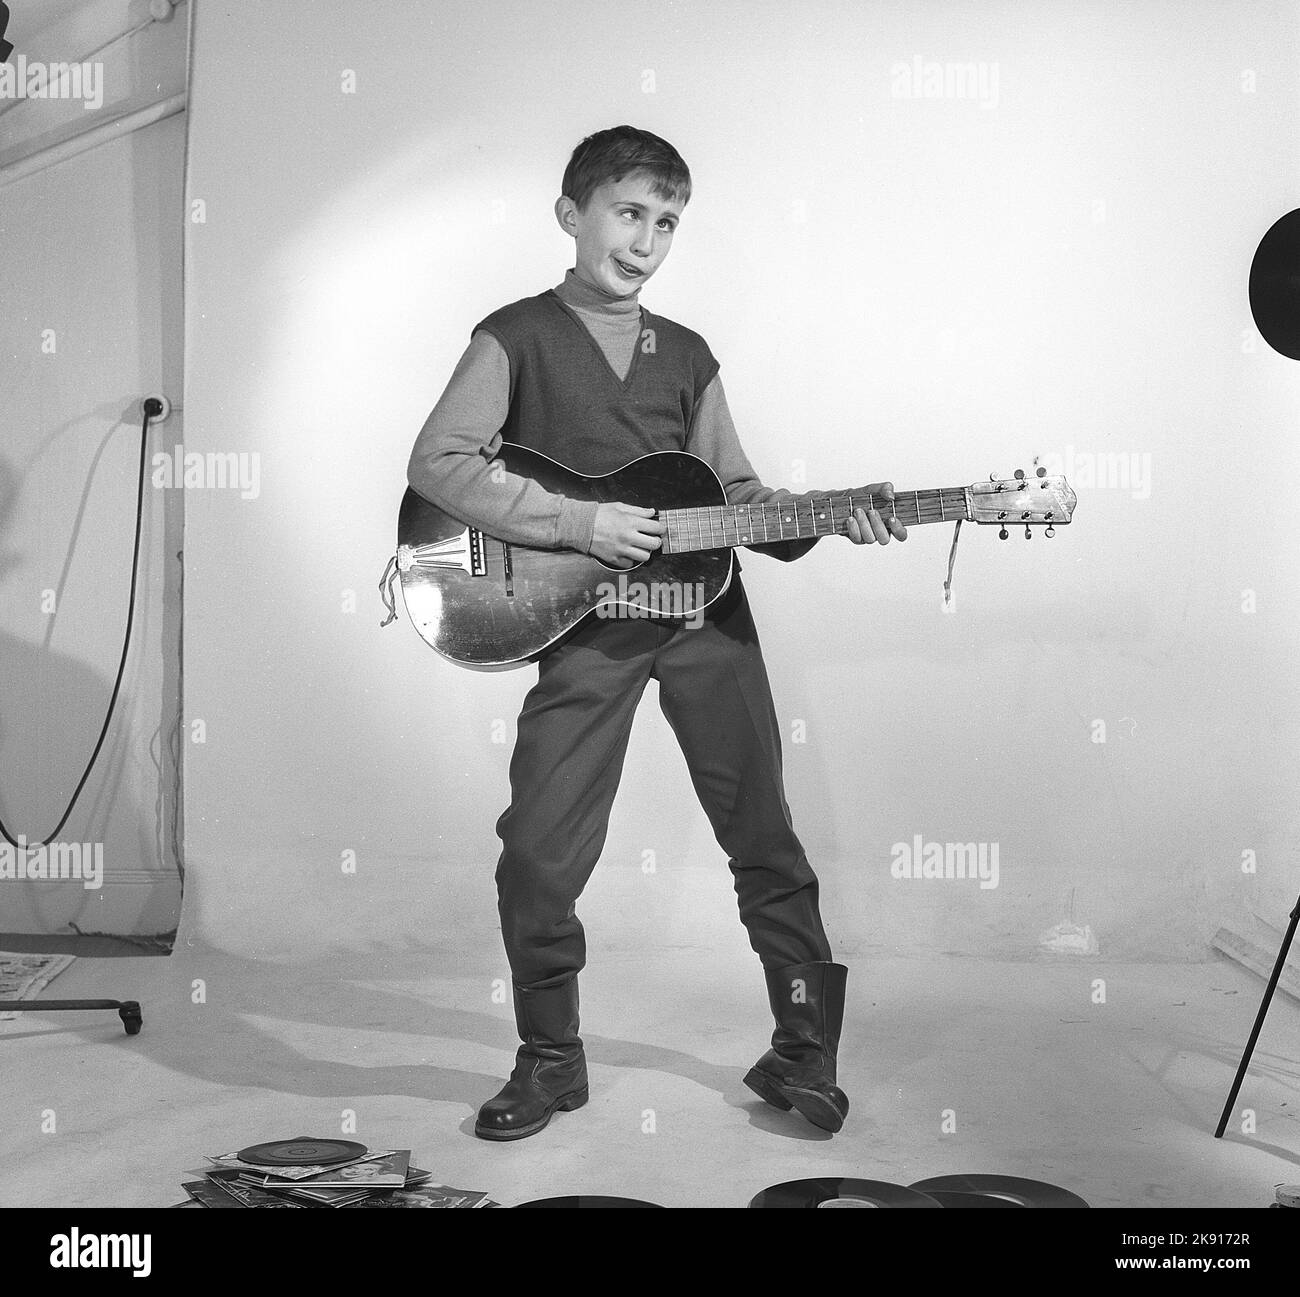 Garçon dans les 1950s. Un garçon est photographié dans un studio et fait un visage drôle en jouant de la guitare. Peut-être la façon dont il pense des artistes Rock n' roll de l'époque. Suède 1959 Kristoffersson réf. CF62 Banque D'Images